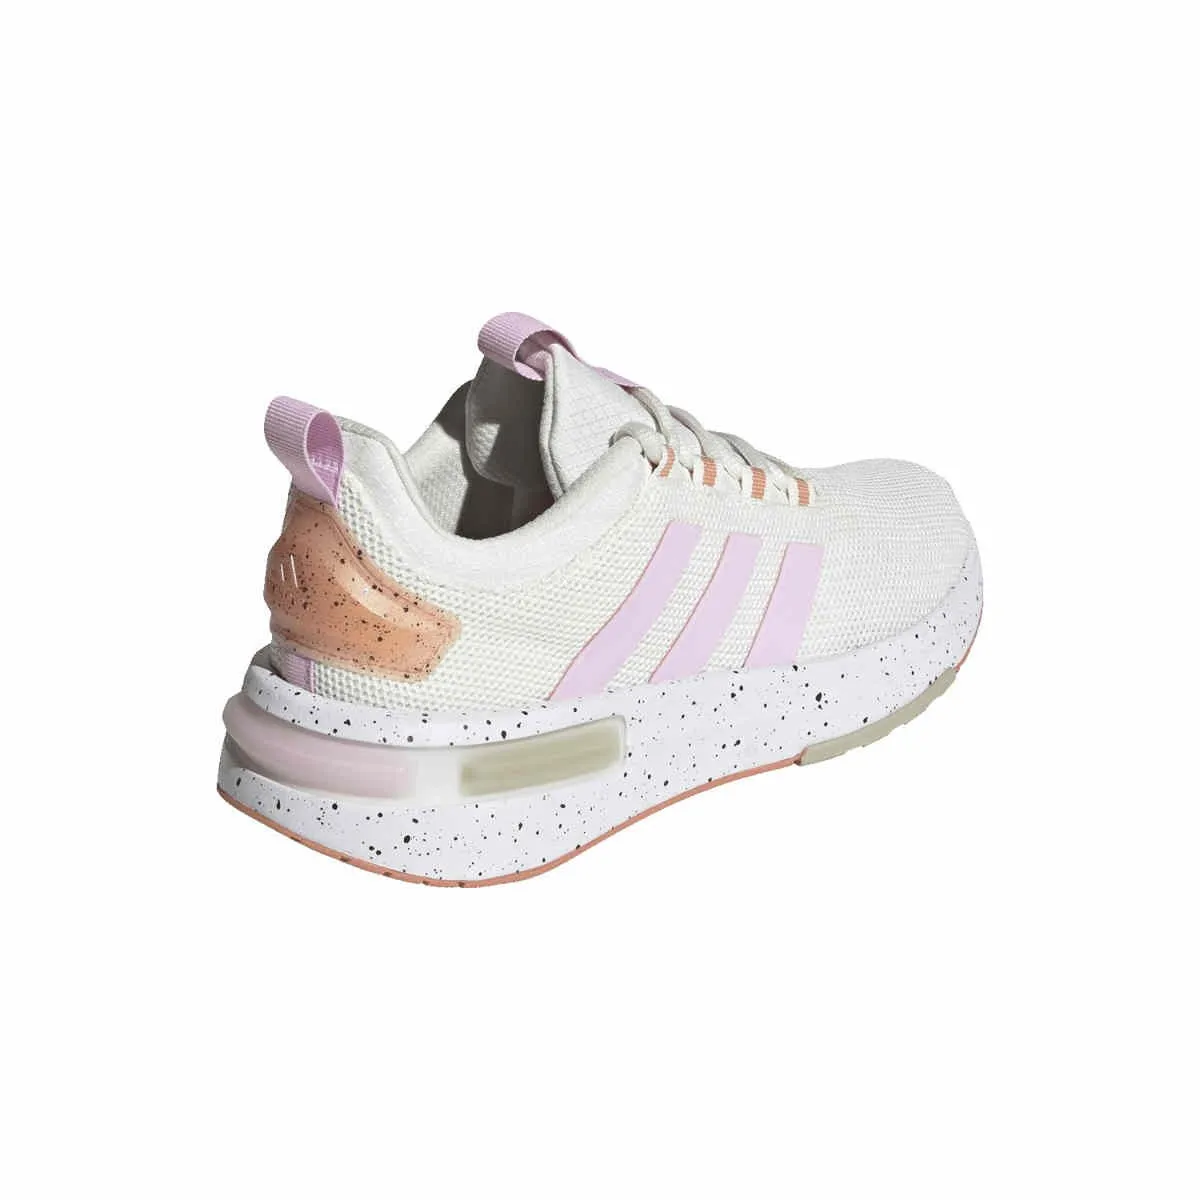 adidas sports shoe Racer ladies white/pink